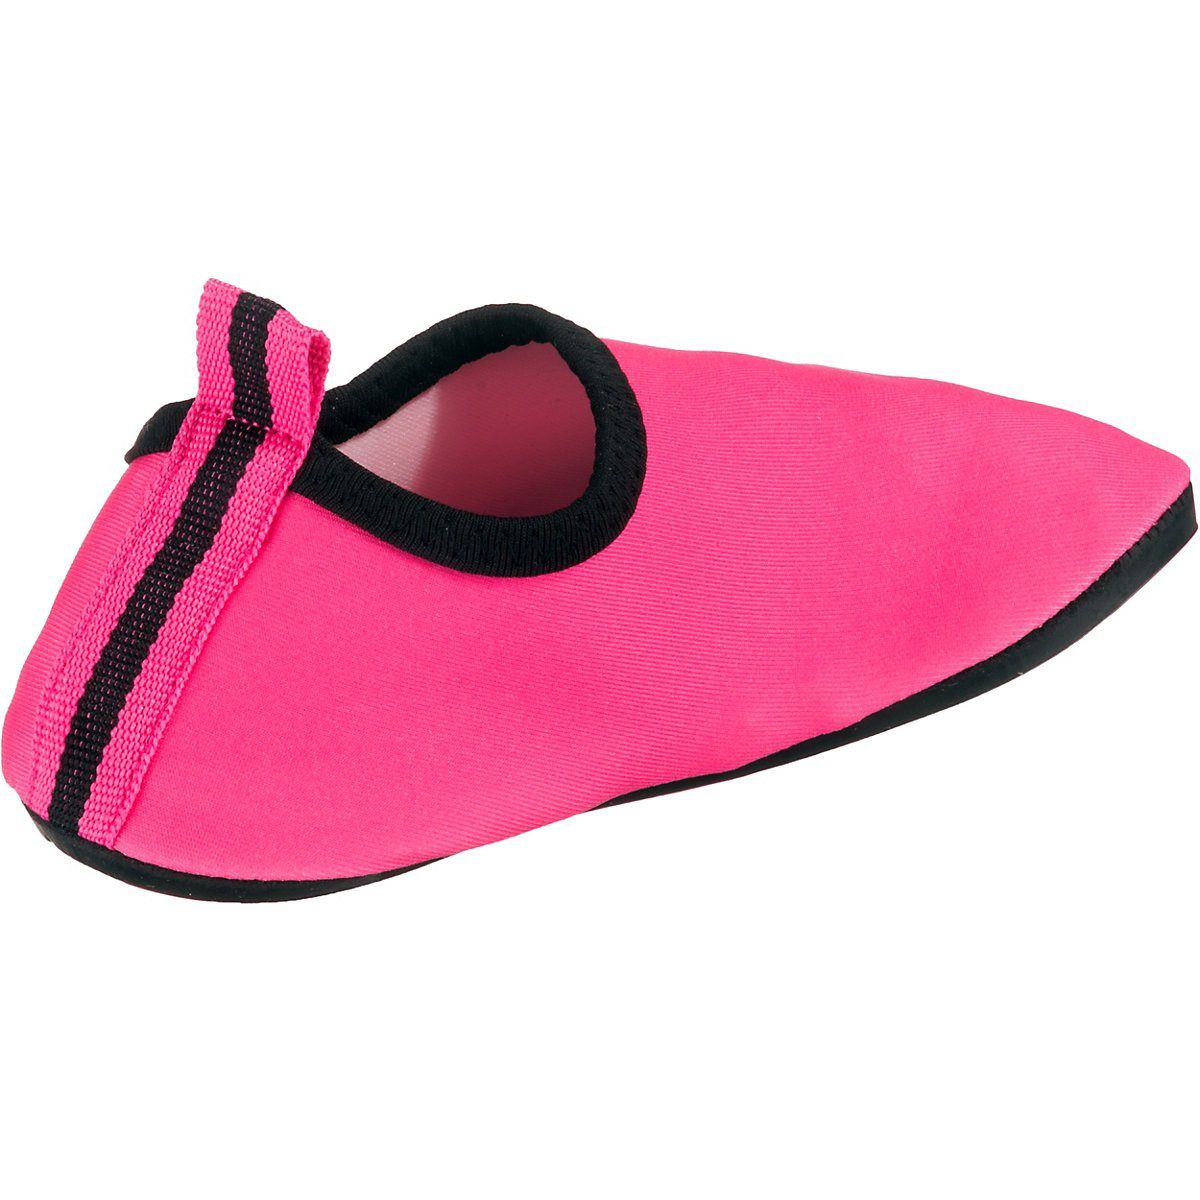 mit flexible Barfuß-Schuh Uni Sohle Passform, rosa Playshoes Badeschuhe Badeschuh Schwimmschuhe, rutschhemmender Wasserschuhe